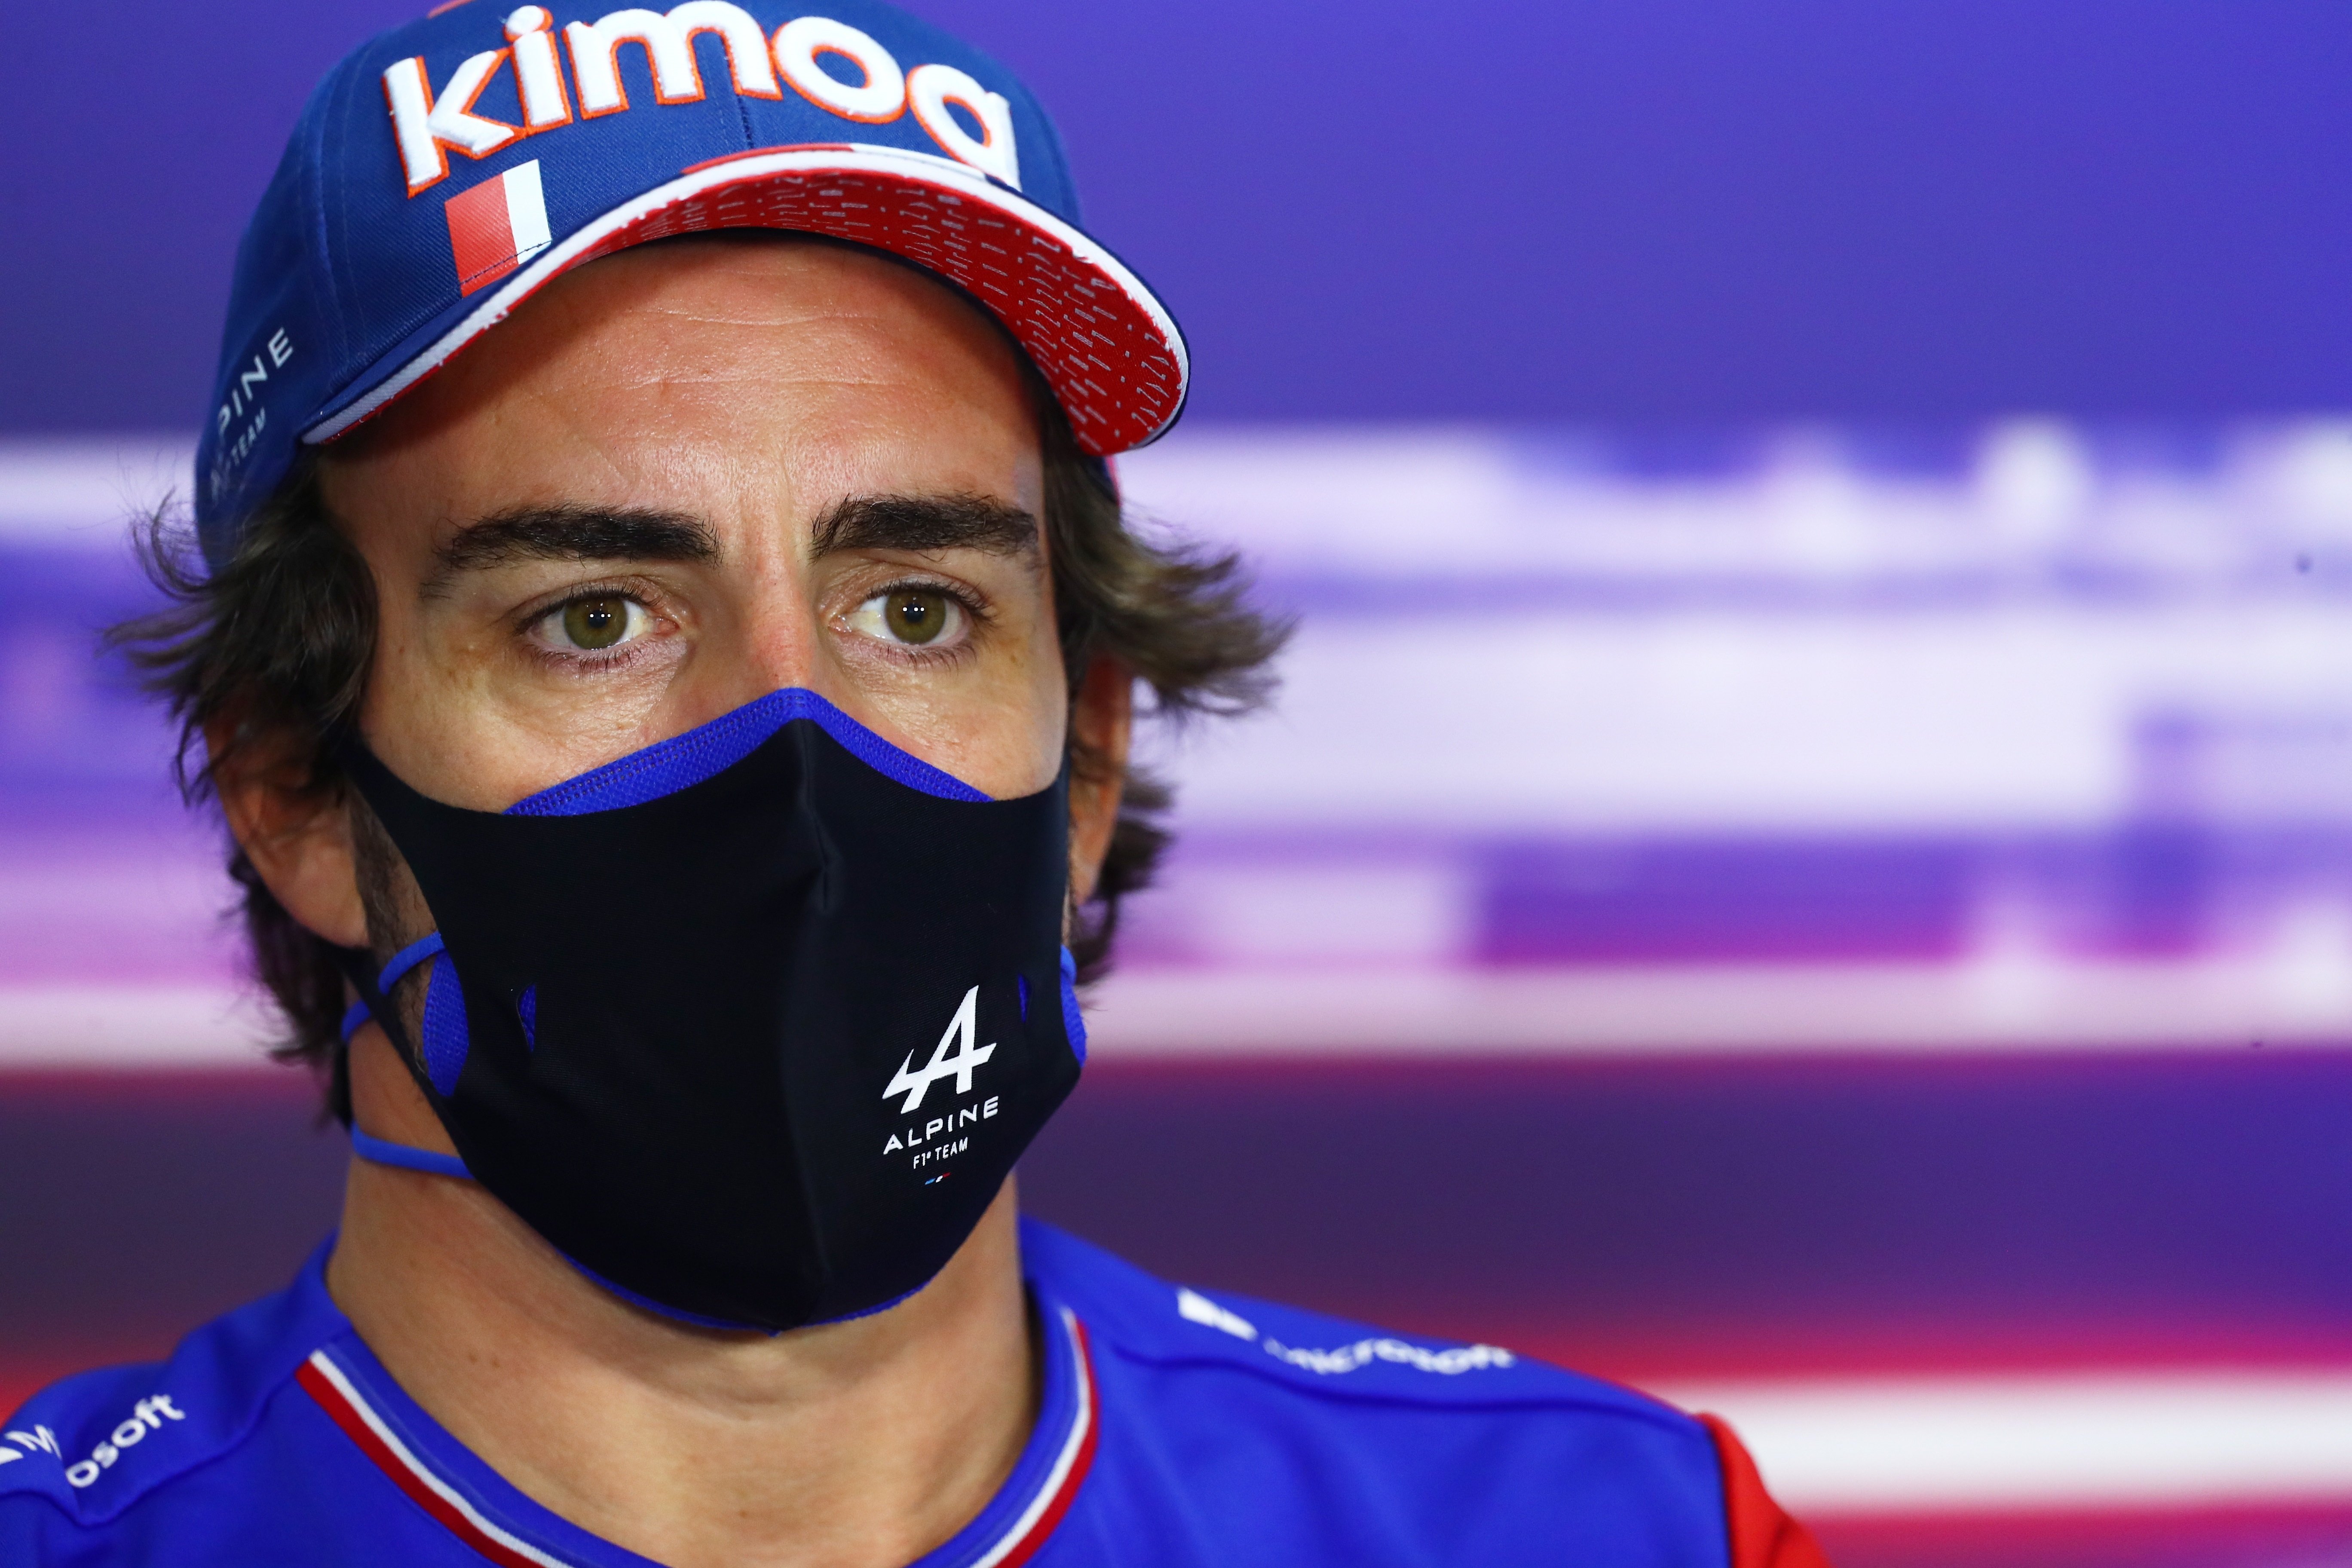 Surrealista motivo del abandono de Fernando Alonso en Baréin